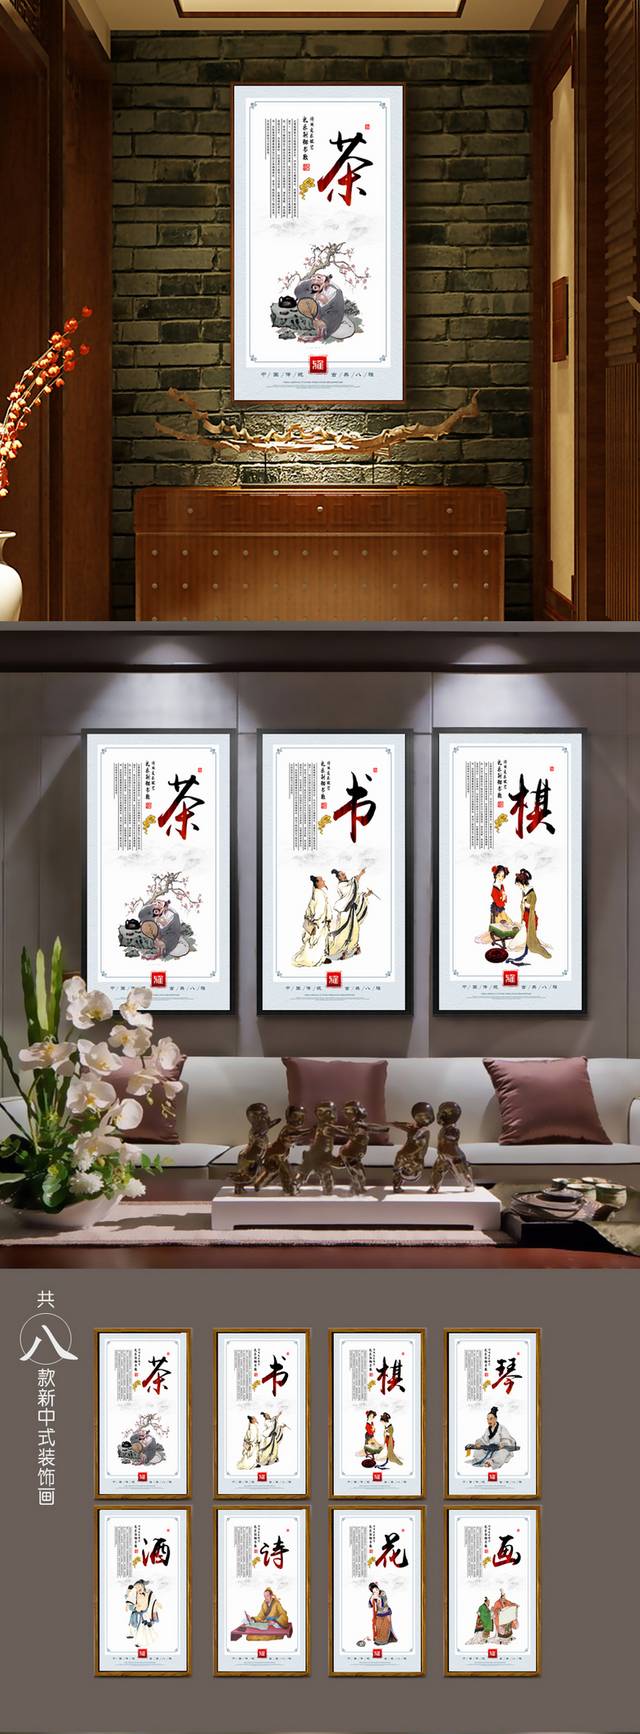 中国古典八雅文化宣传展板设计